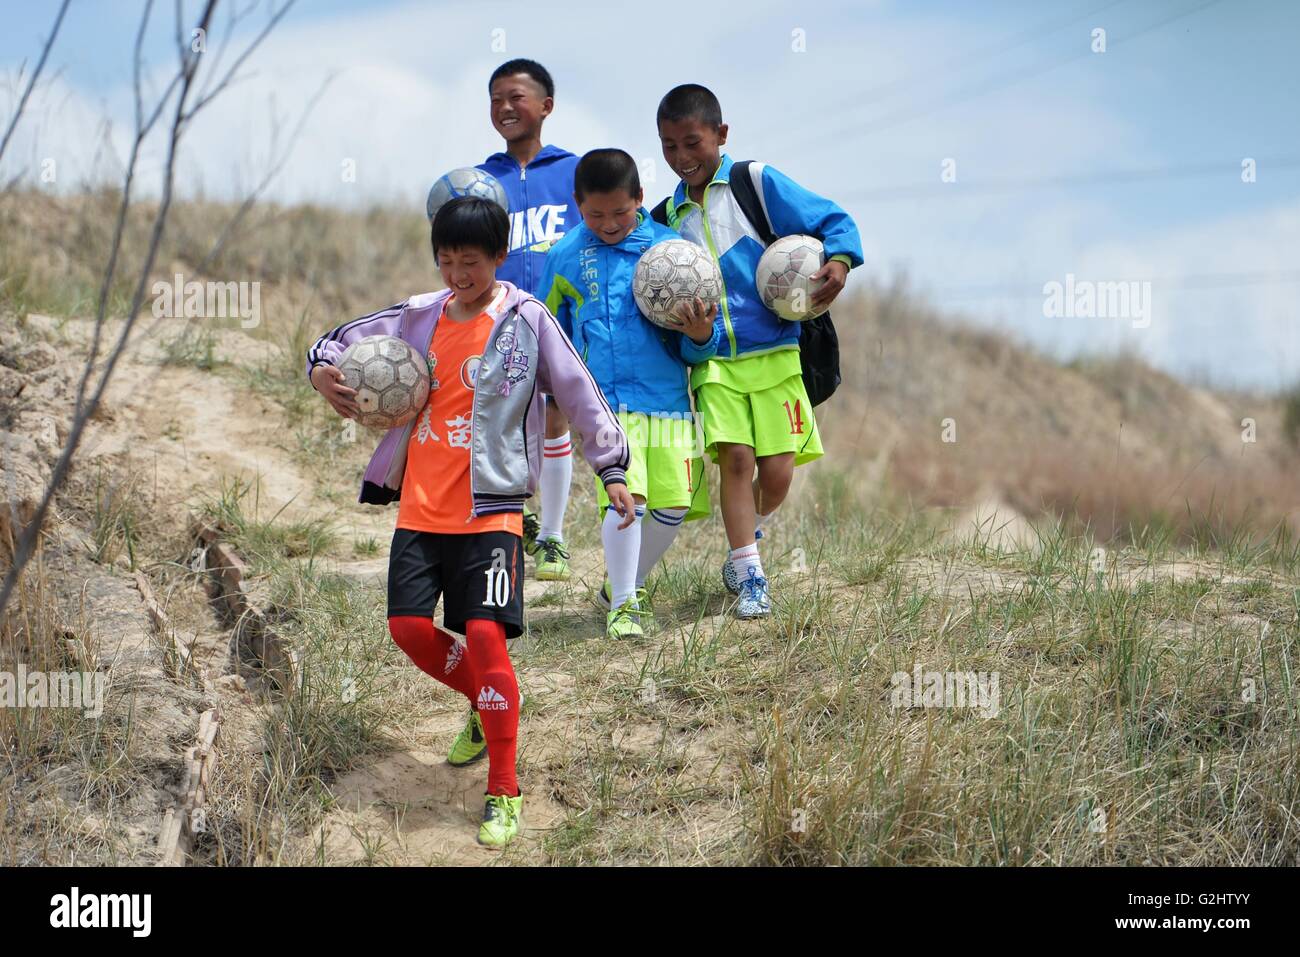 (160601)--LANZHOU, 1. Juni 2016 (Xinhua)--Kinder der Zhonglianchuan Primary School gehen nach der Schule in Yuzhong Grafschaft, Nordwesten Chinas Provinz Gansu, 31. Mai 2016. Fußball bereichert Kinder Alltag an der Schule in den Bereichen ländliche Plateau auf einer Höhe von mehr als 2.300 Metern befindet. Viele Kinder haben die Möglichkeit zur Teilnahme an Fußball-Spiele in den großen Städten. Schulleiter Ma Anwu zu hoffen, dass Fußball mehr ländlichen Studenten Schritt aus den Bergen helfen könnte. Mittwoch ist Internationaler Kindertag. Kinder auf dem Plateau halten ein besonderes Fußballspiel, t zu feiern Stockfoto